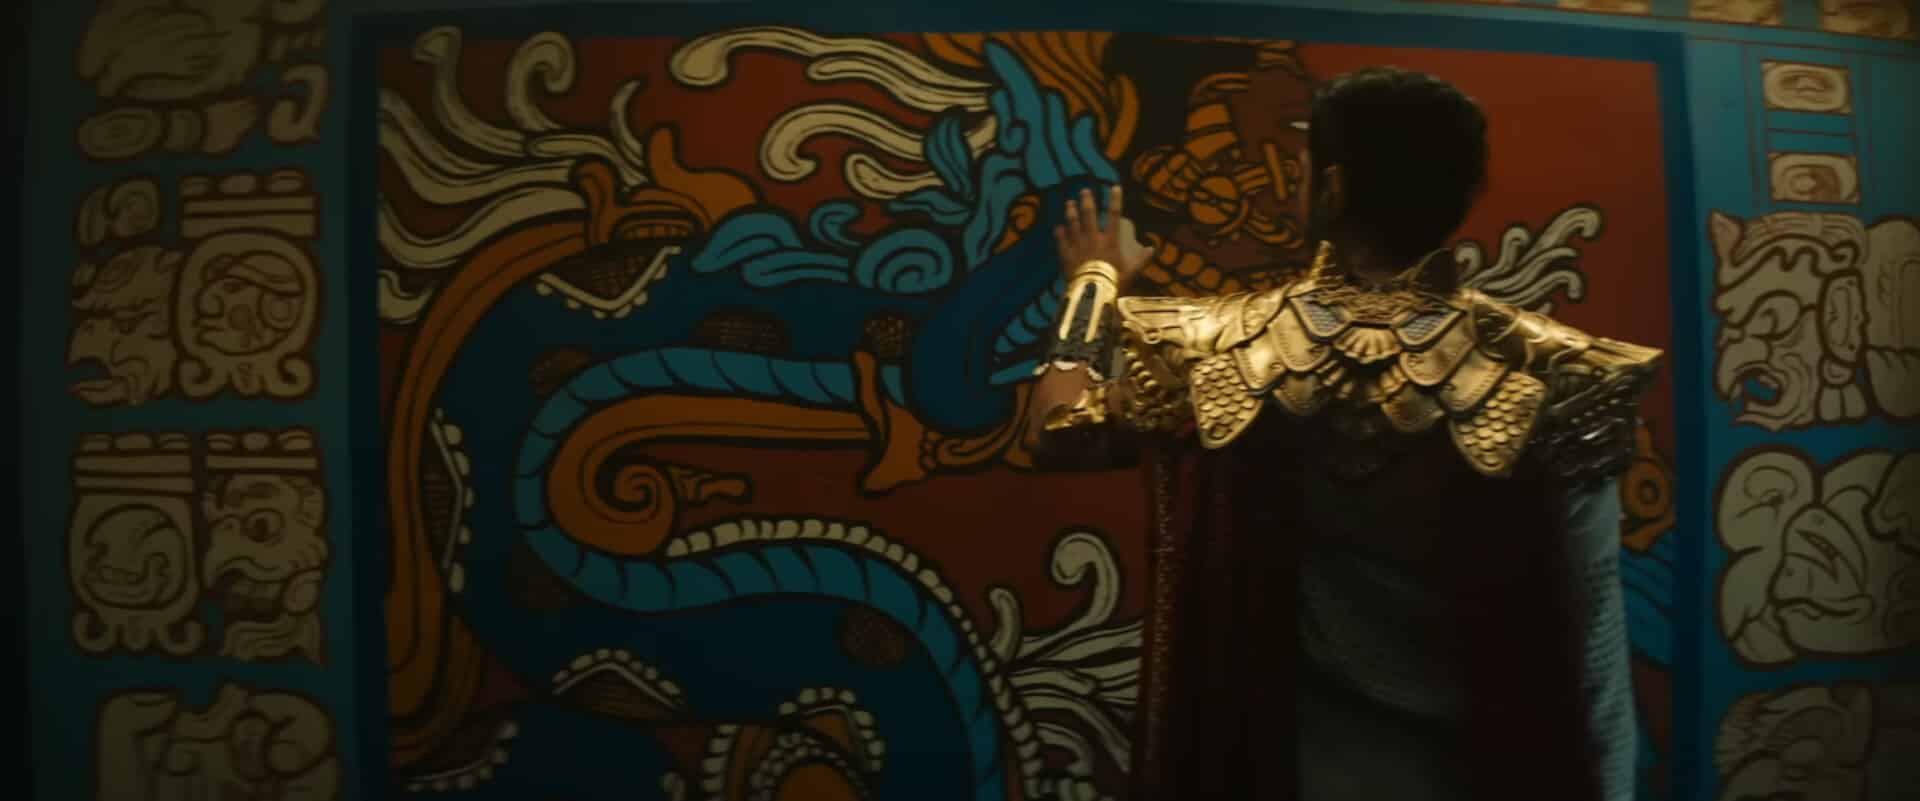 Multiverse Saga n'a pas de colonne vertébrale claire thèse d'histoire centrale MCU Phase 4 5 6 qui sont des héros méchants Kang Doctor Doom Fantastic Four Namor Black Panther: Wakanda Forever Marvel Cinematic Universe